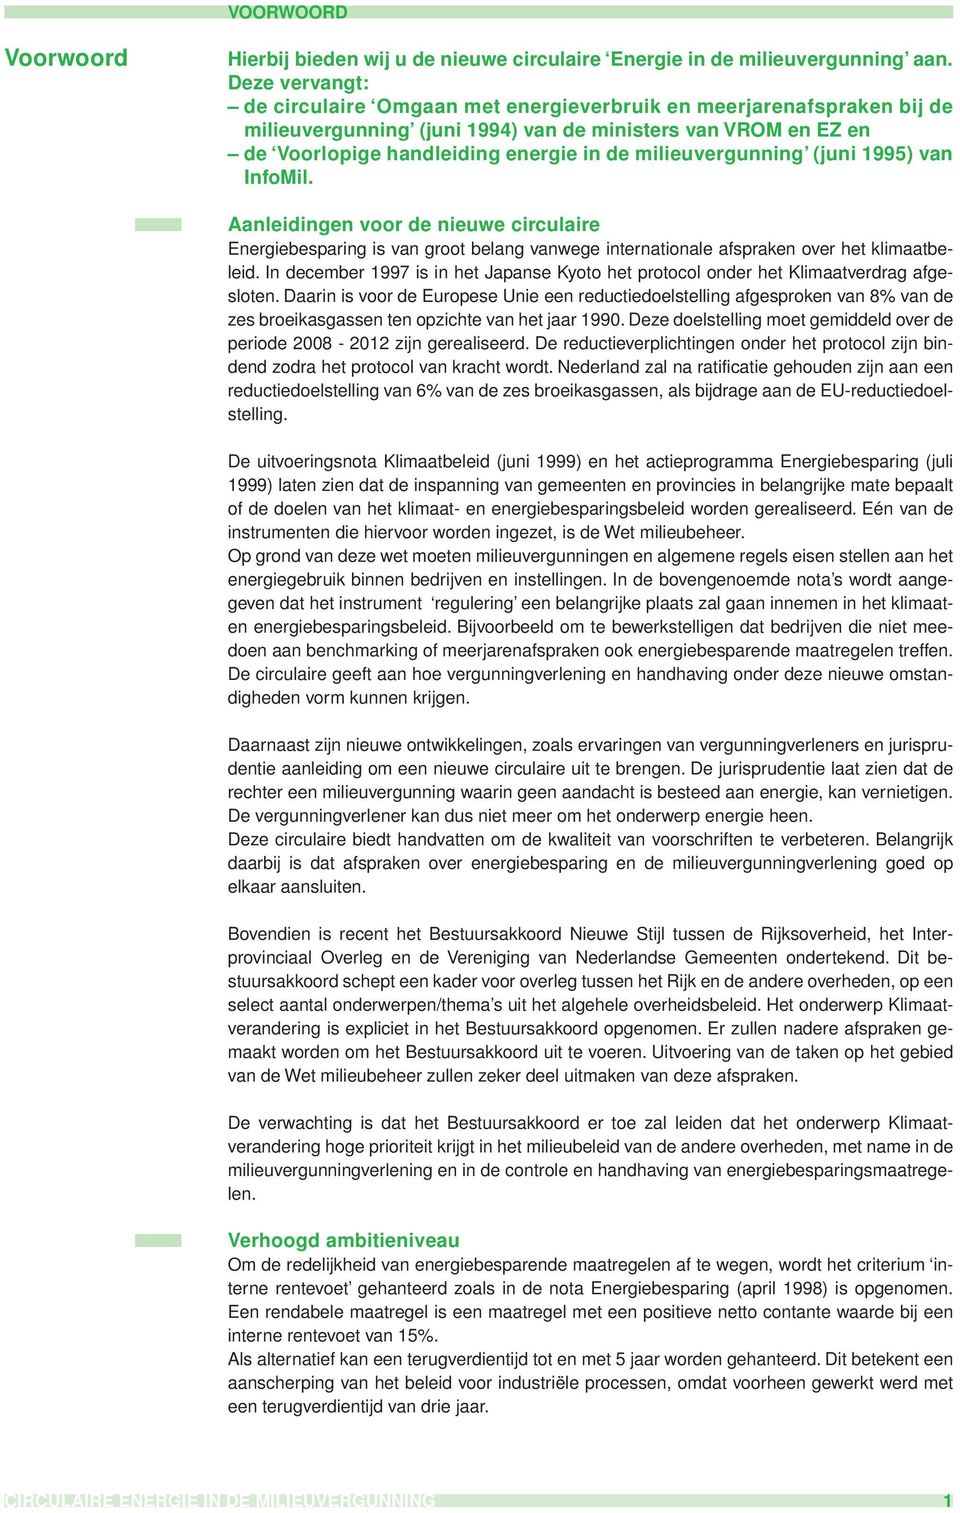 milieuvergunning (juni 1995) van InfoMil. Aanleidingen voor de nieuwe circulaire Energiebesparing is van groot belang vanwege internationale afspraken over het klimaatbeleid.